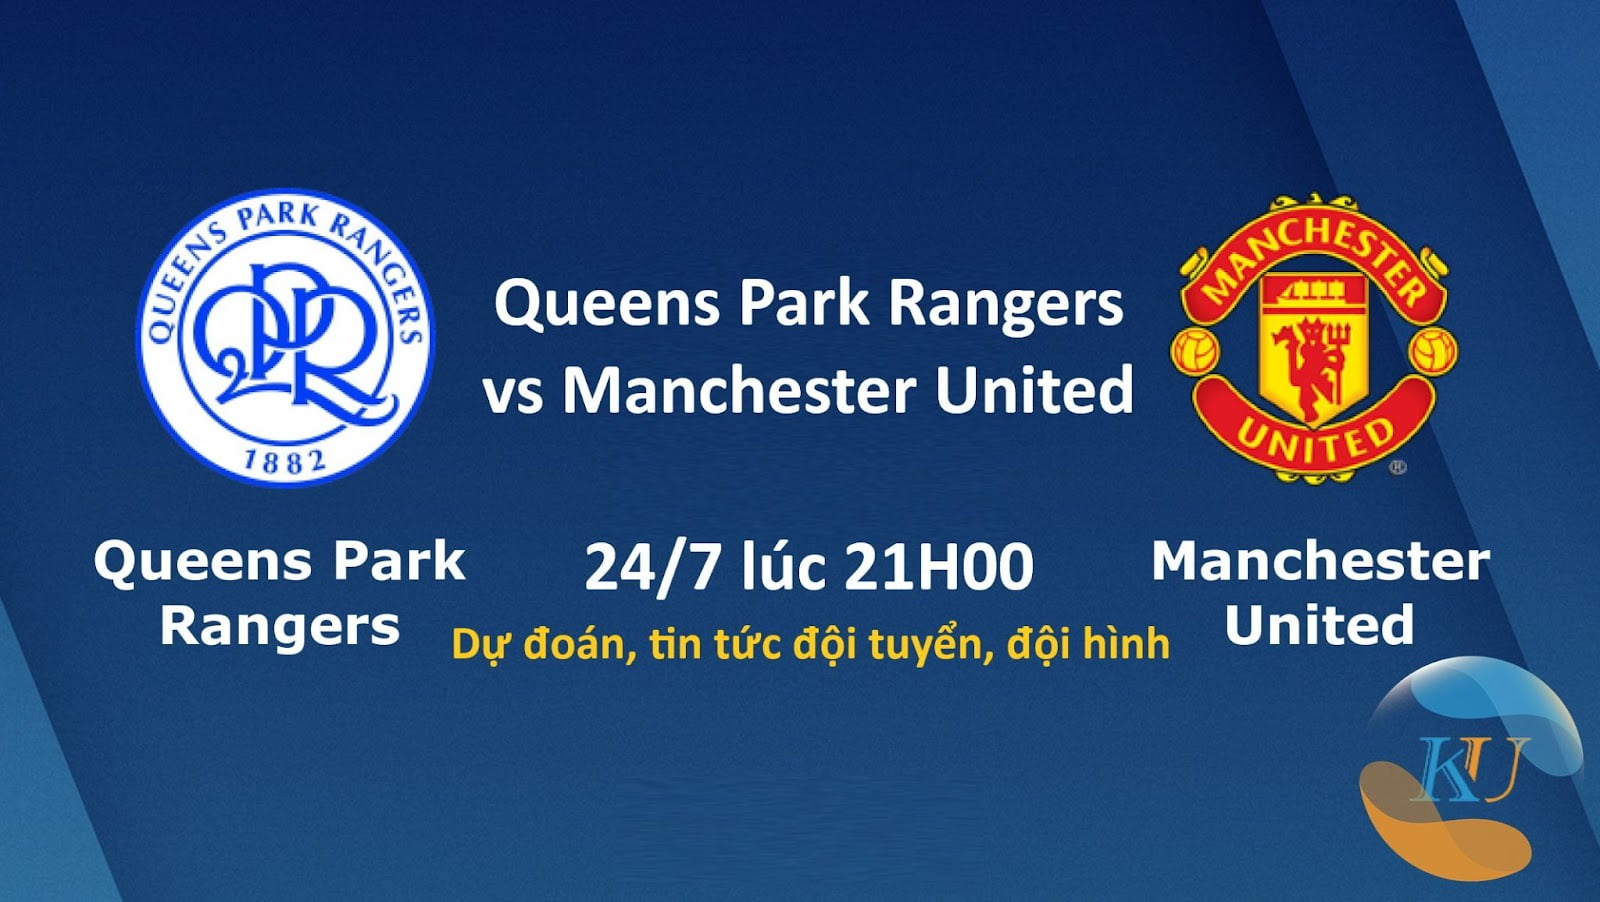 Queens Park Rangers vs Manchester United - Dự đoán, tin tức đội tuyển, đội hình